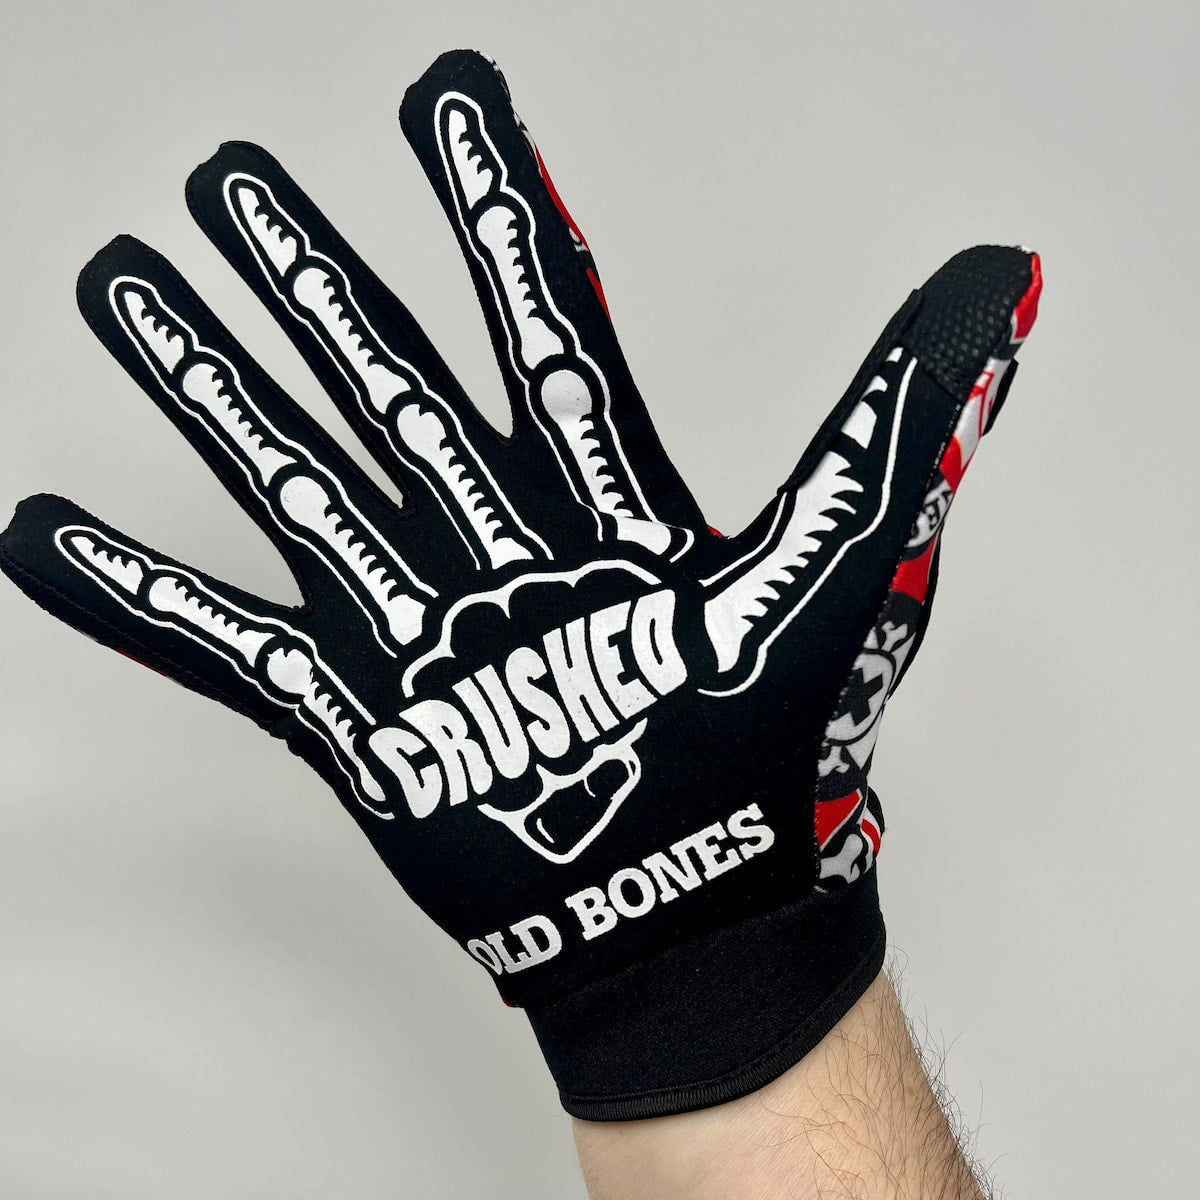 Old Bones x Crushed BMX Gloves